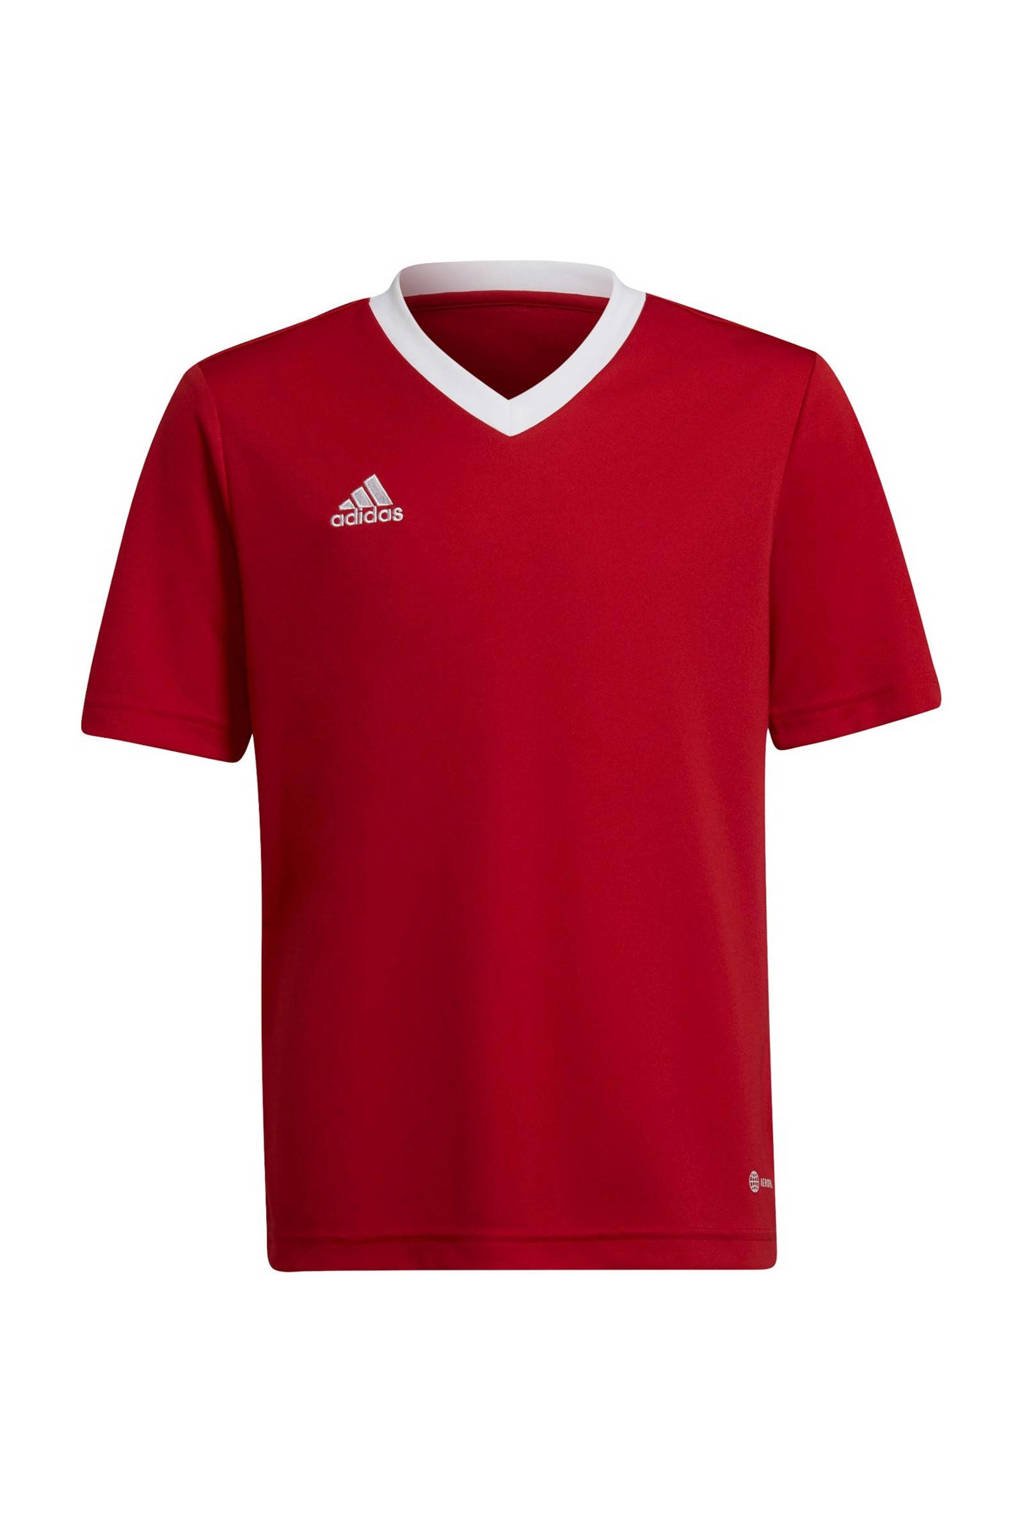 Rode jongens en meisjes adidas Performance Junior sport T-shirt van gerecycled polyester met logo dessin, korte mouwen en ronde hals